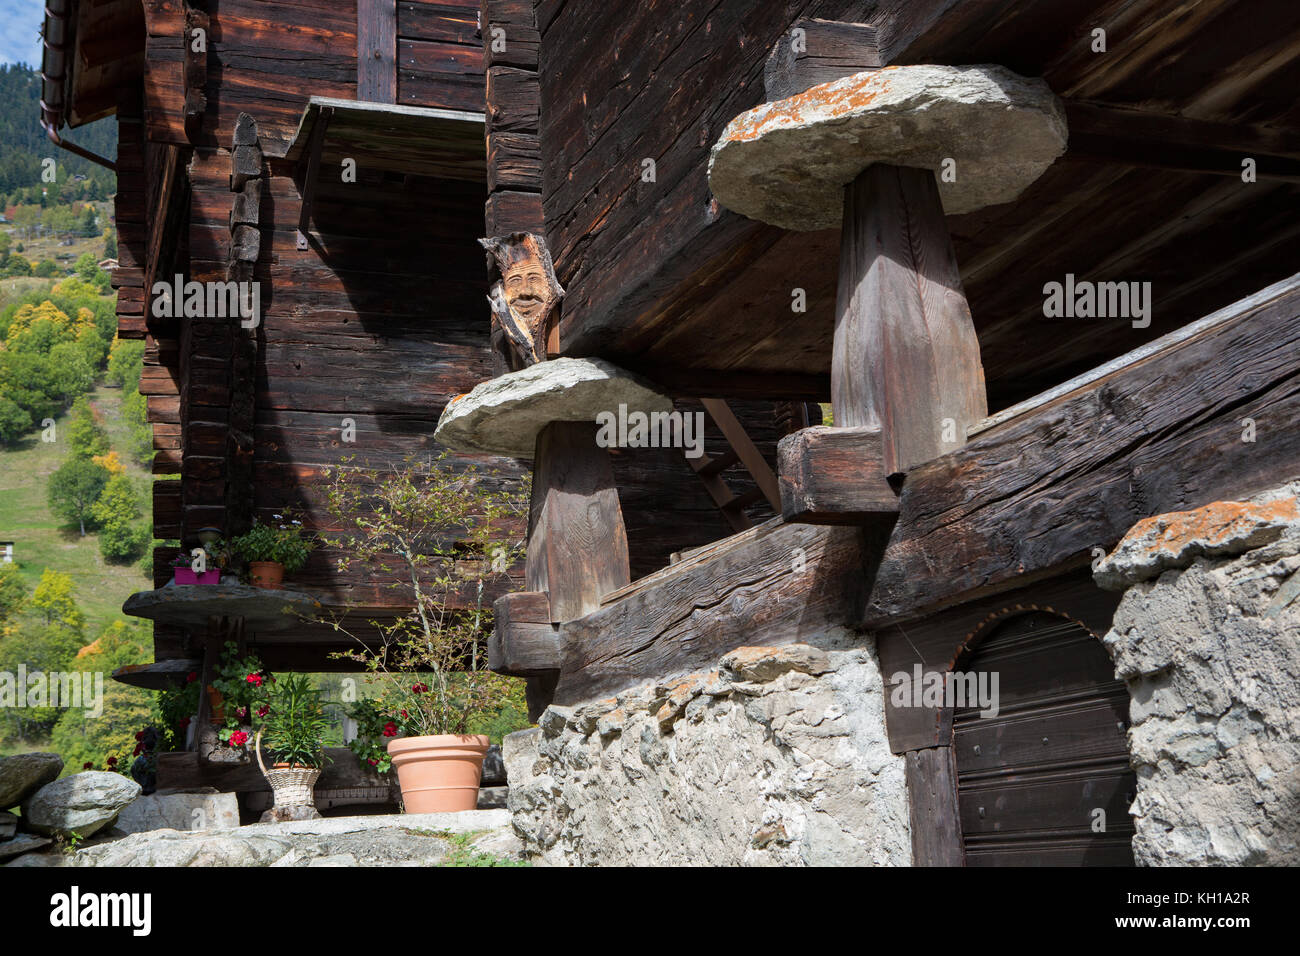 BLATTEN, SCHWEIZ - SEPT. 28, 2017: Schädlingsbekämpfung: Staddle oder  steddle Steine unter einem traditionellen Schweizer Chalet mit einem Holz  geschnitzt Gesicht, eine lokale tradi Stockfotografie - Alamy